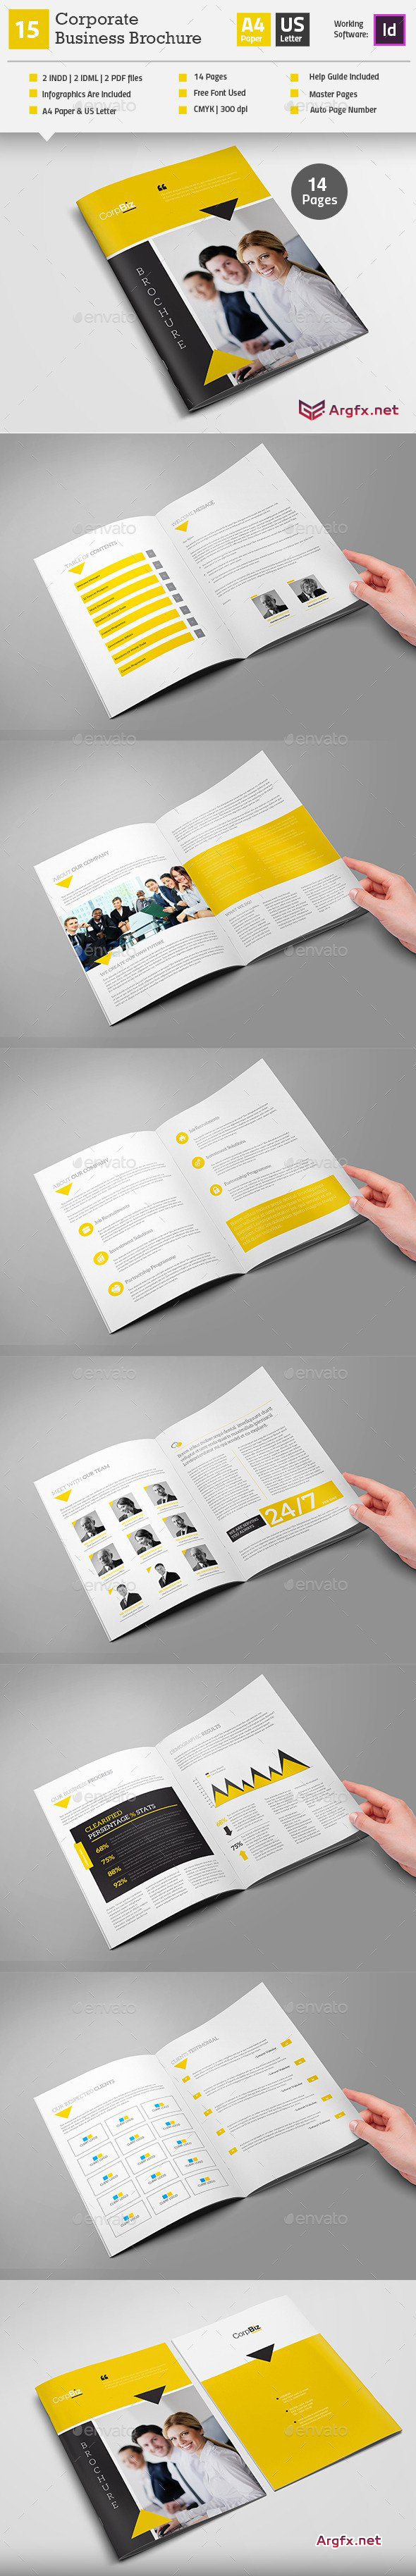 Multipurpose Business Brochure Indesign Layout V16 12485860